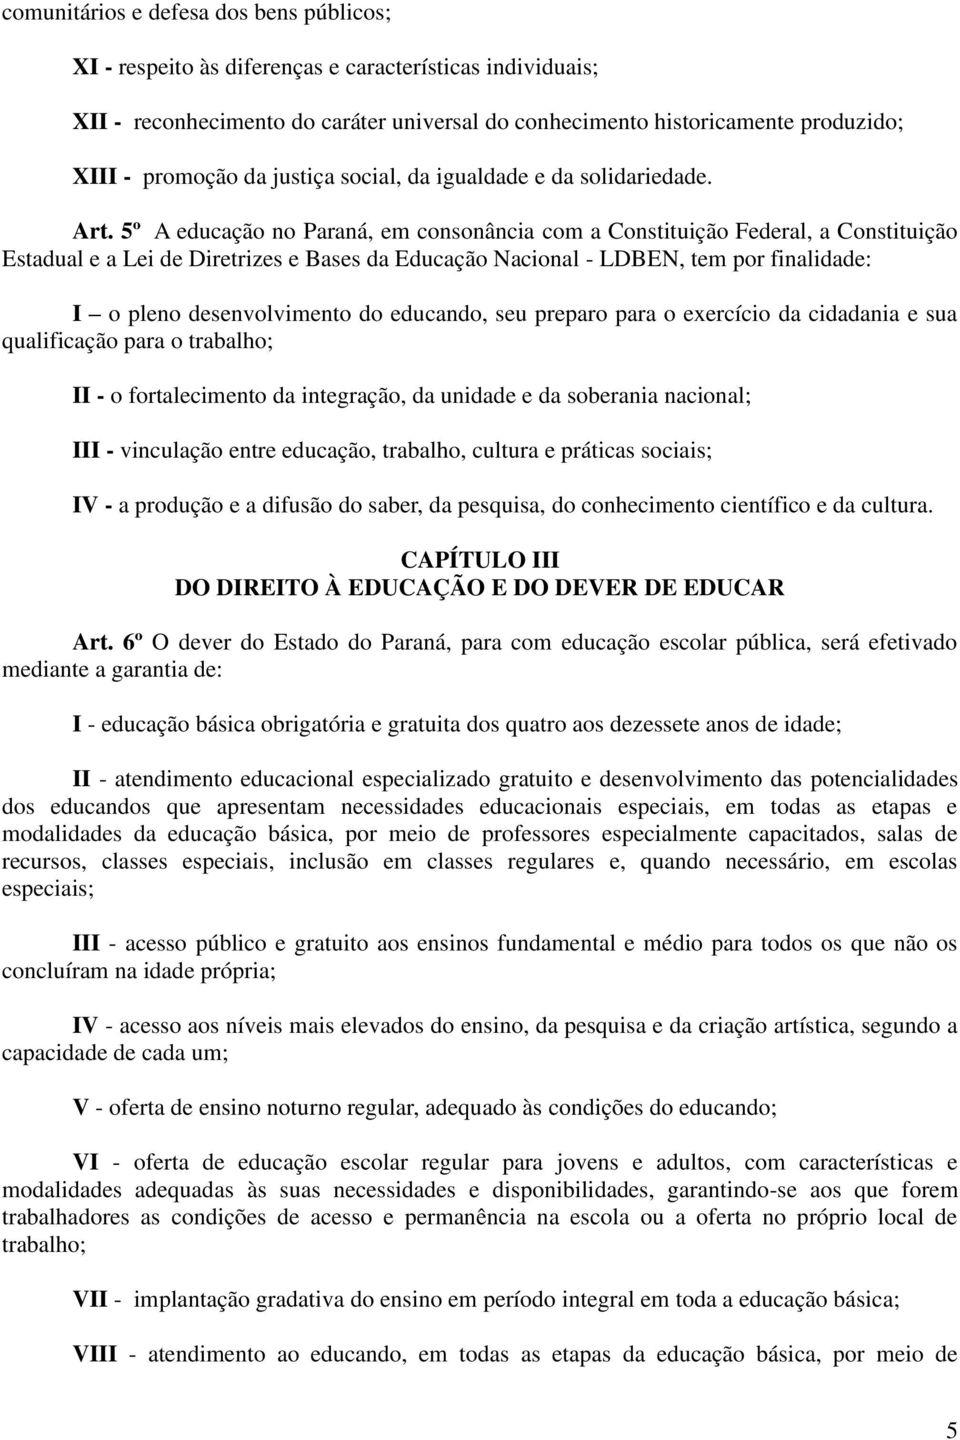 5º A educação no Paraná, em consonância com a Constituição Federal, a Constituição Estadual e a Lei de Diretrizes e Bases da Educação Nacional - LDBEN, tem por finalidade: I o pleno desenvolvimento